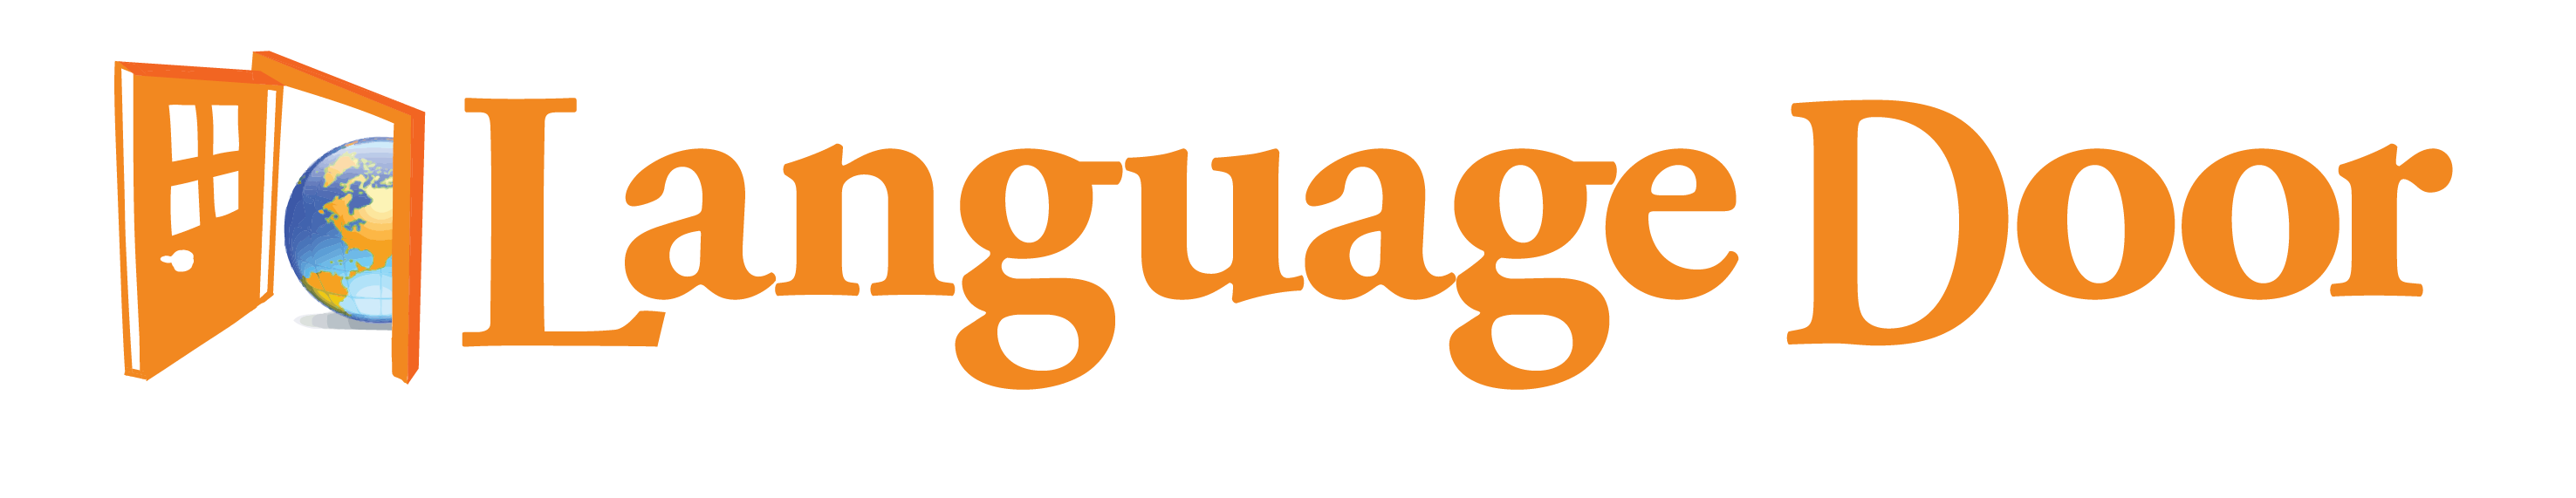 Language Door Logo